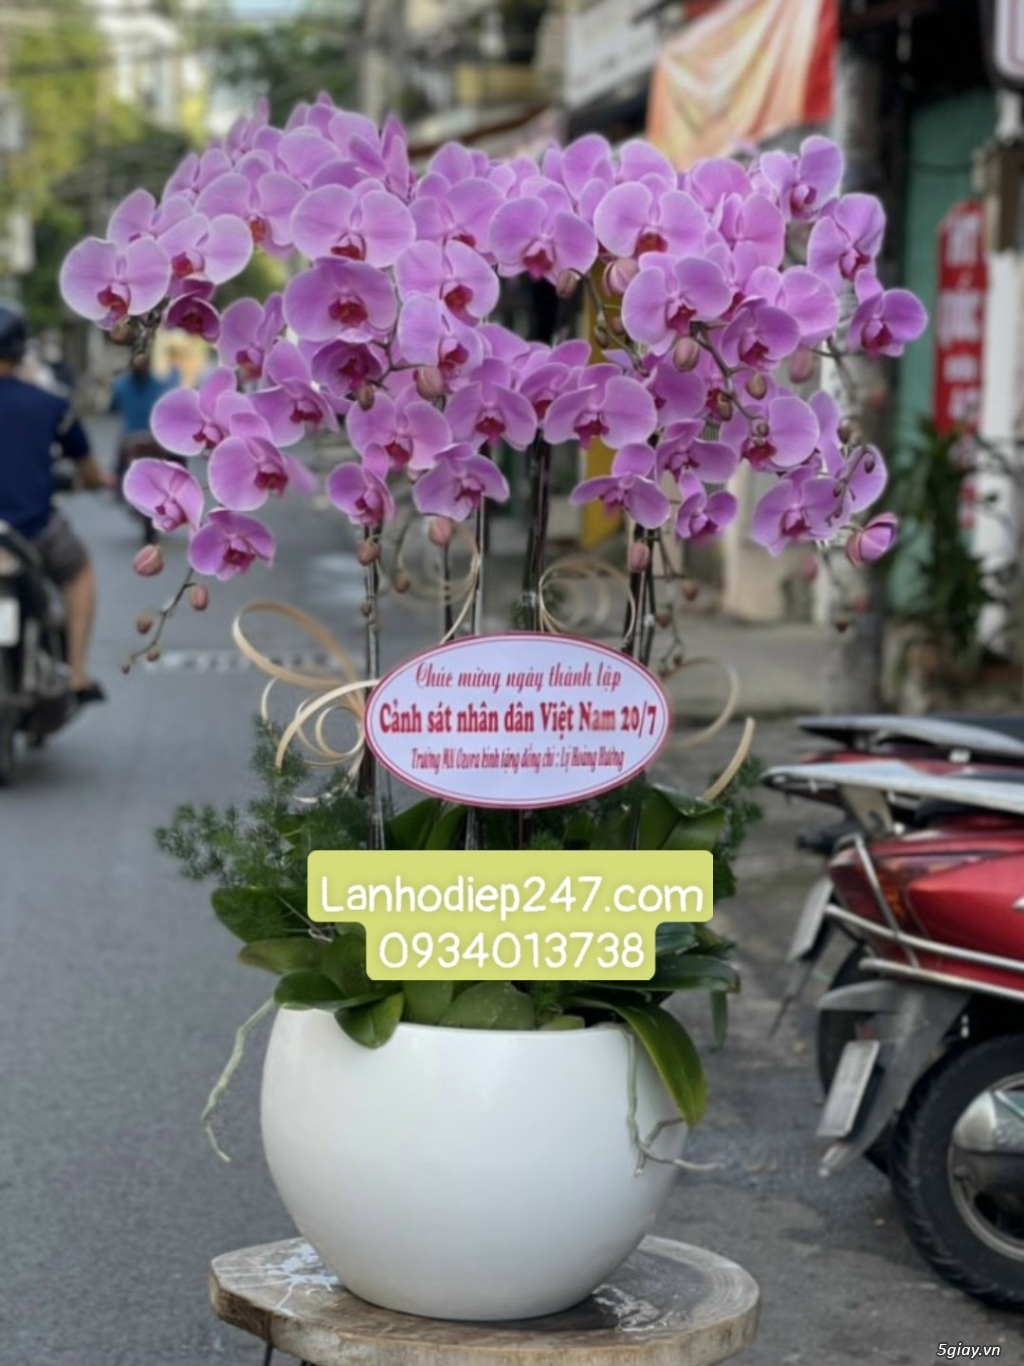 Nơi cung cấp Lan Hồ Điệp cao cấp nhất Sài Gòn - Shop hoa 247 tphcm - 14